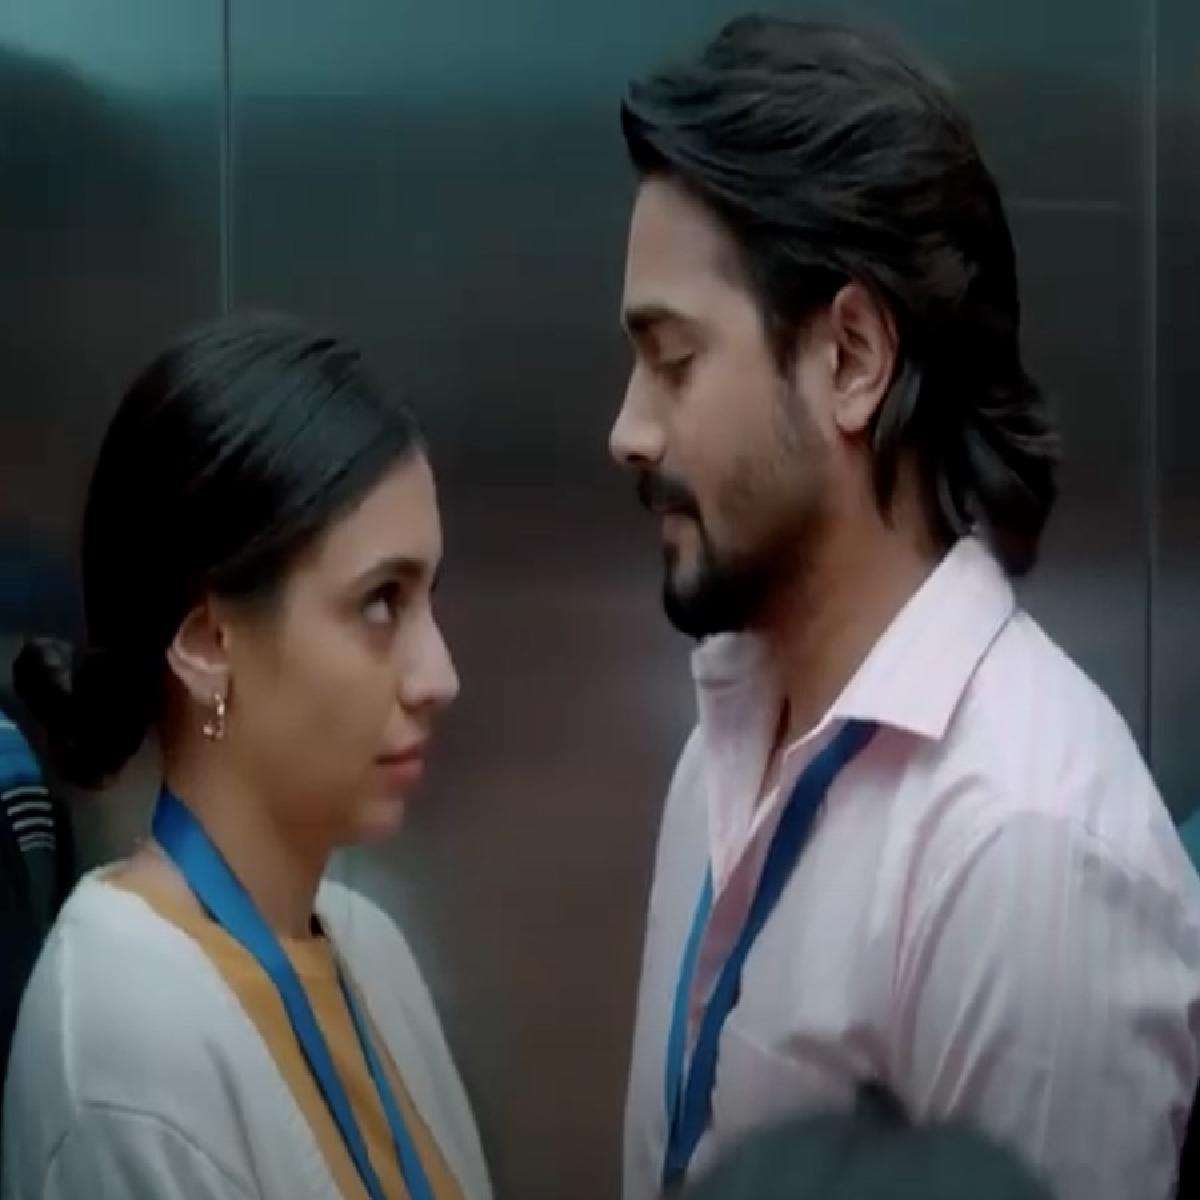 Bhuvam Bam And Srishti Ganguli Starrer Rafta Rafta Trailer Is Out